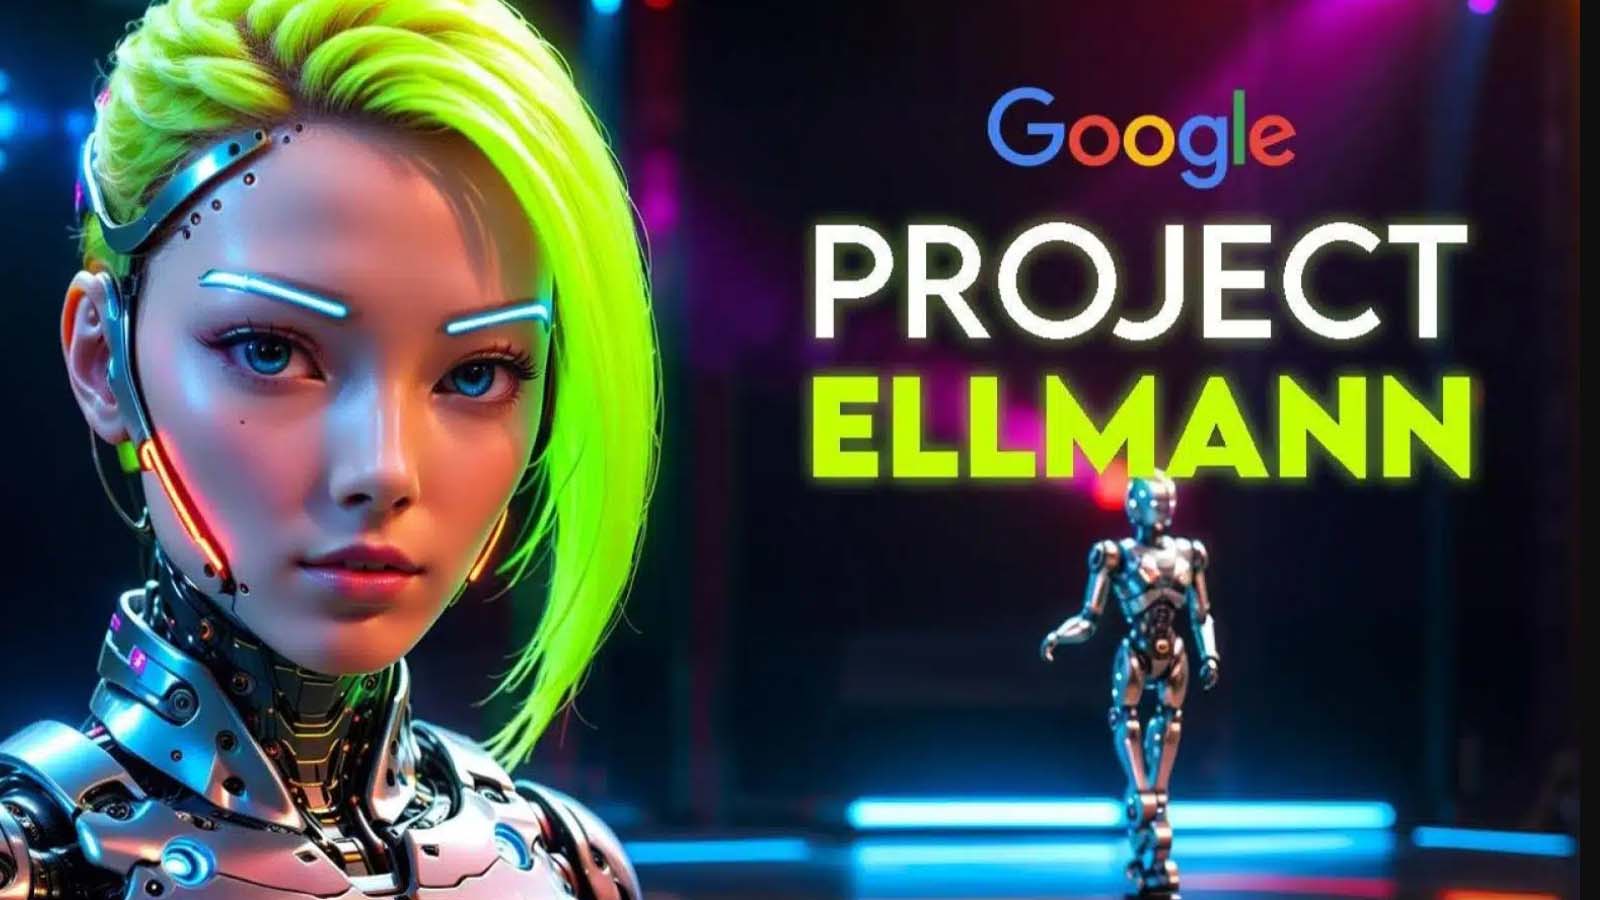 Memoria virtuale: Project Ellmann, Il chatbot che conosce il nostro background